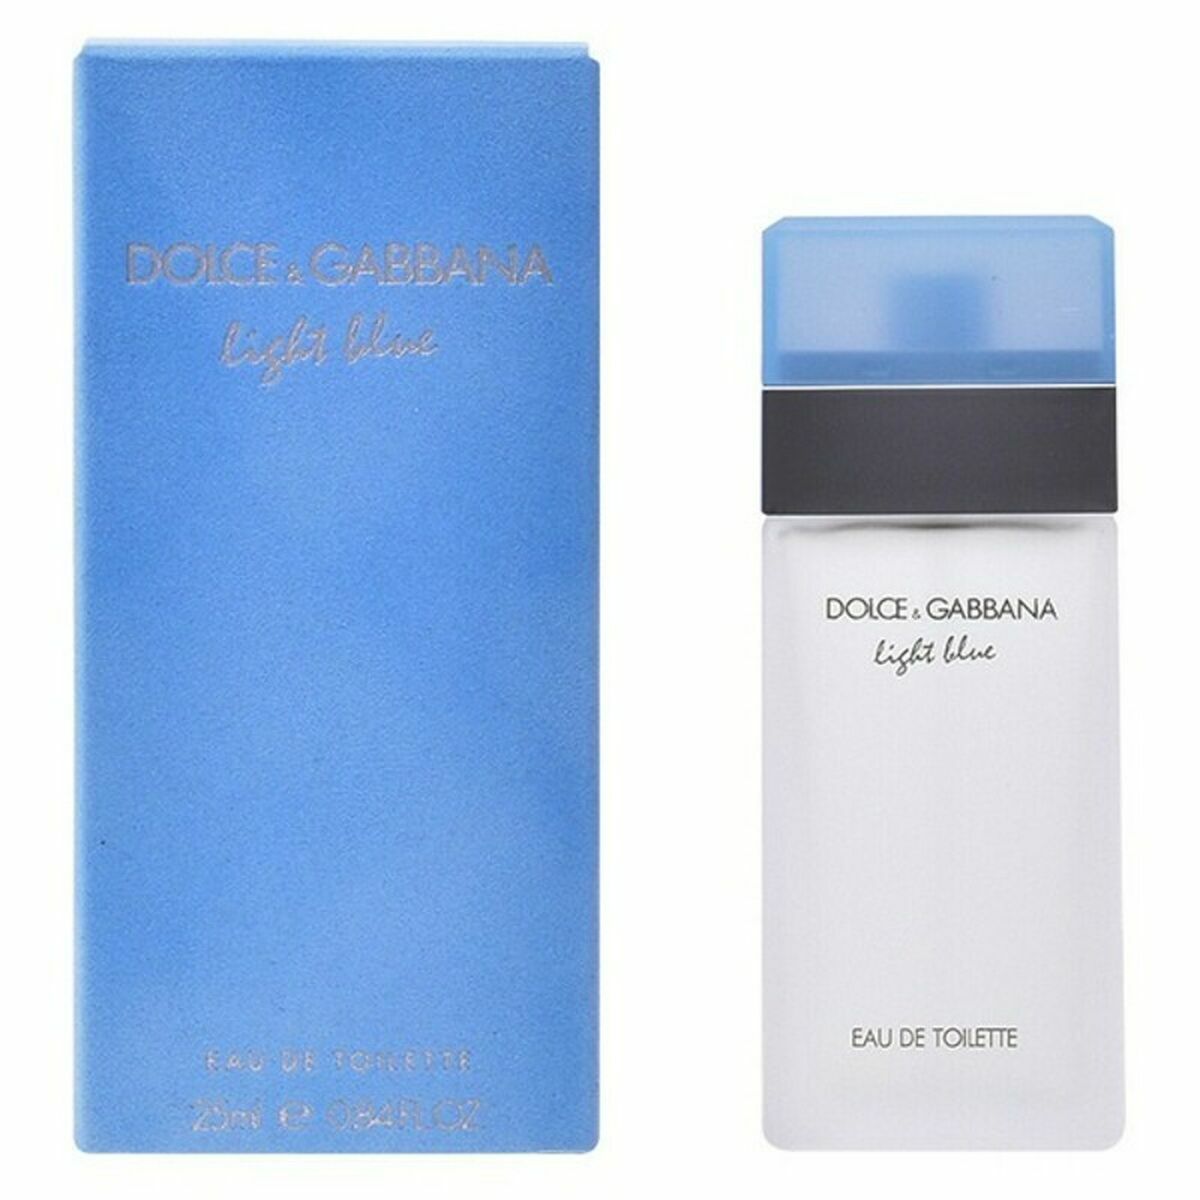 Women's Perfume Dolce & Gabbana Light Blue EDT